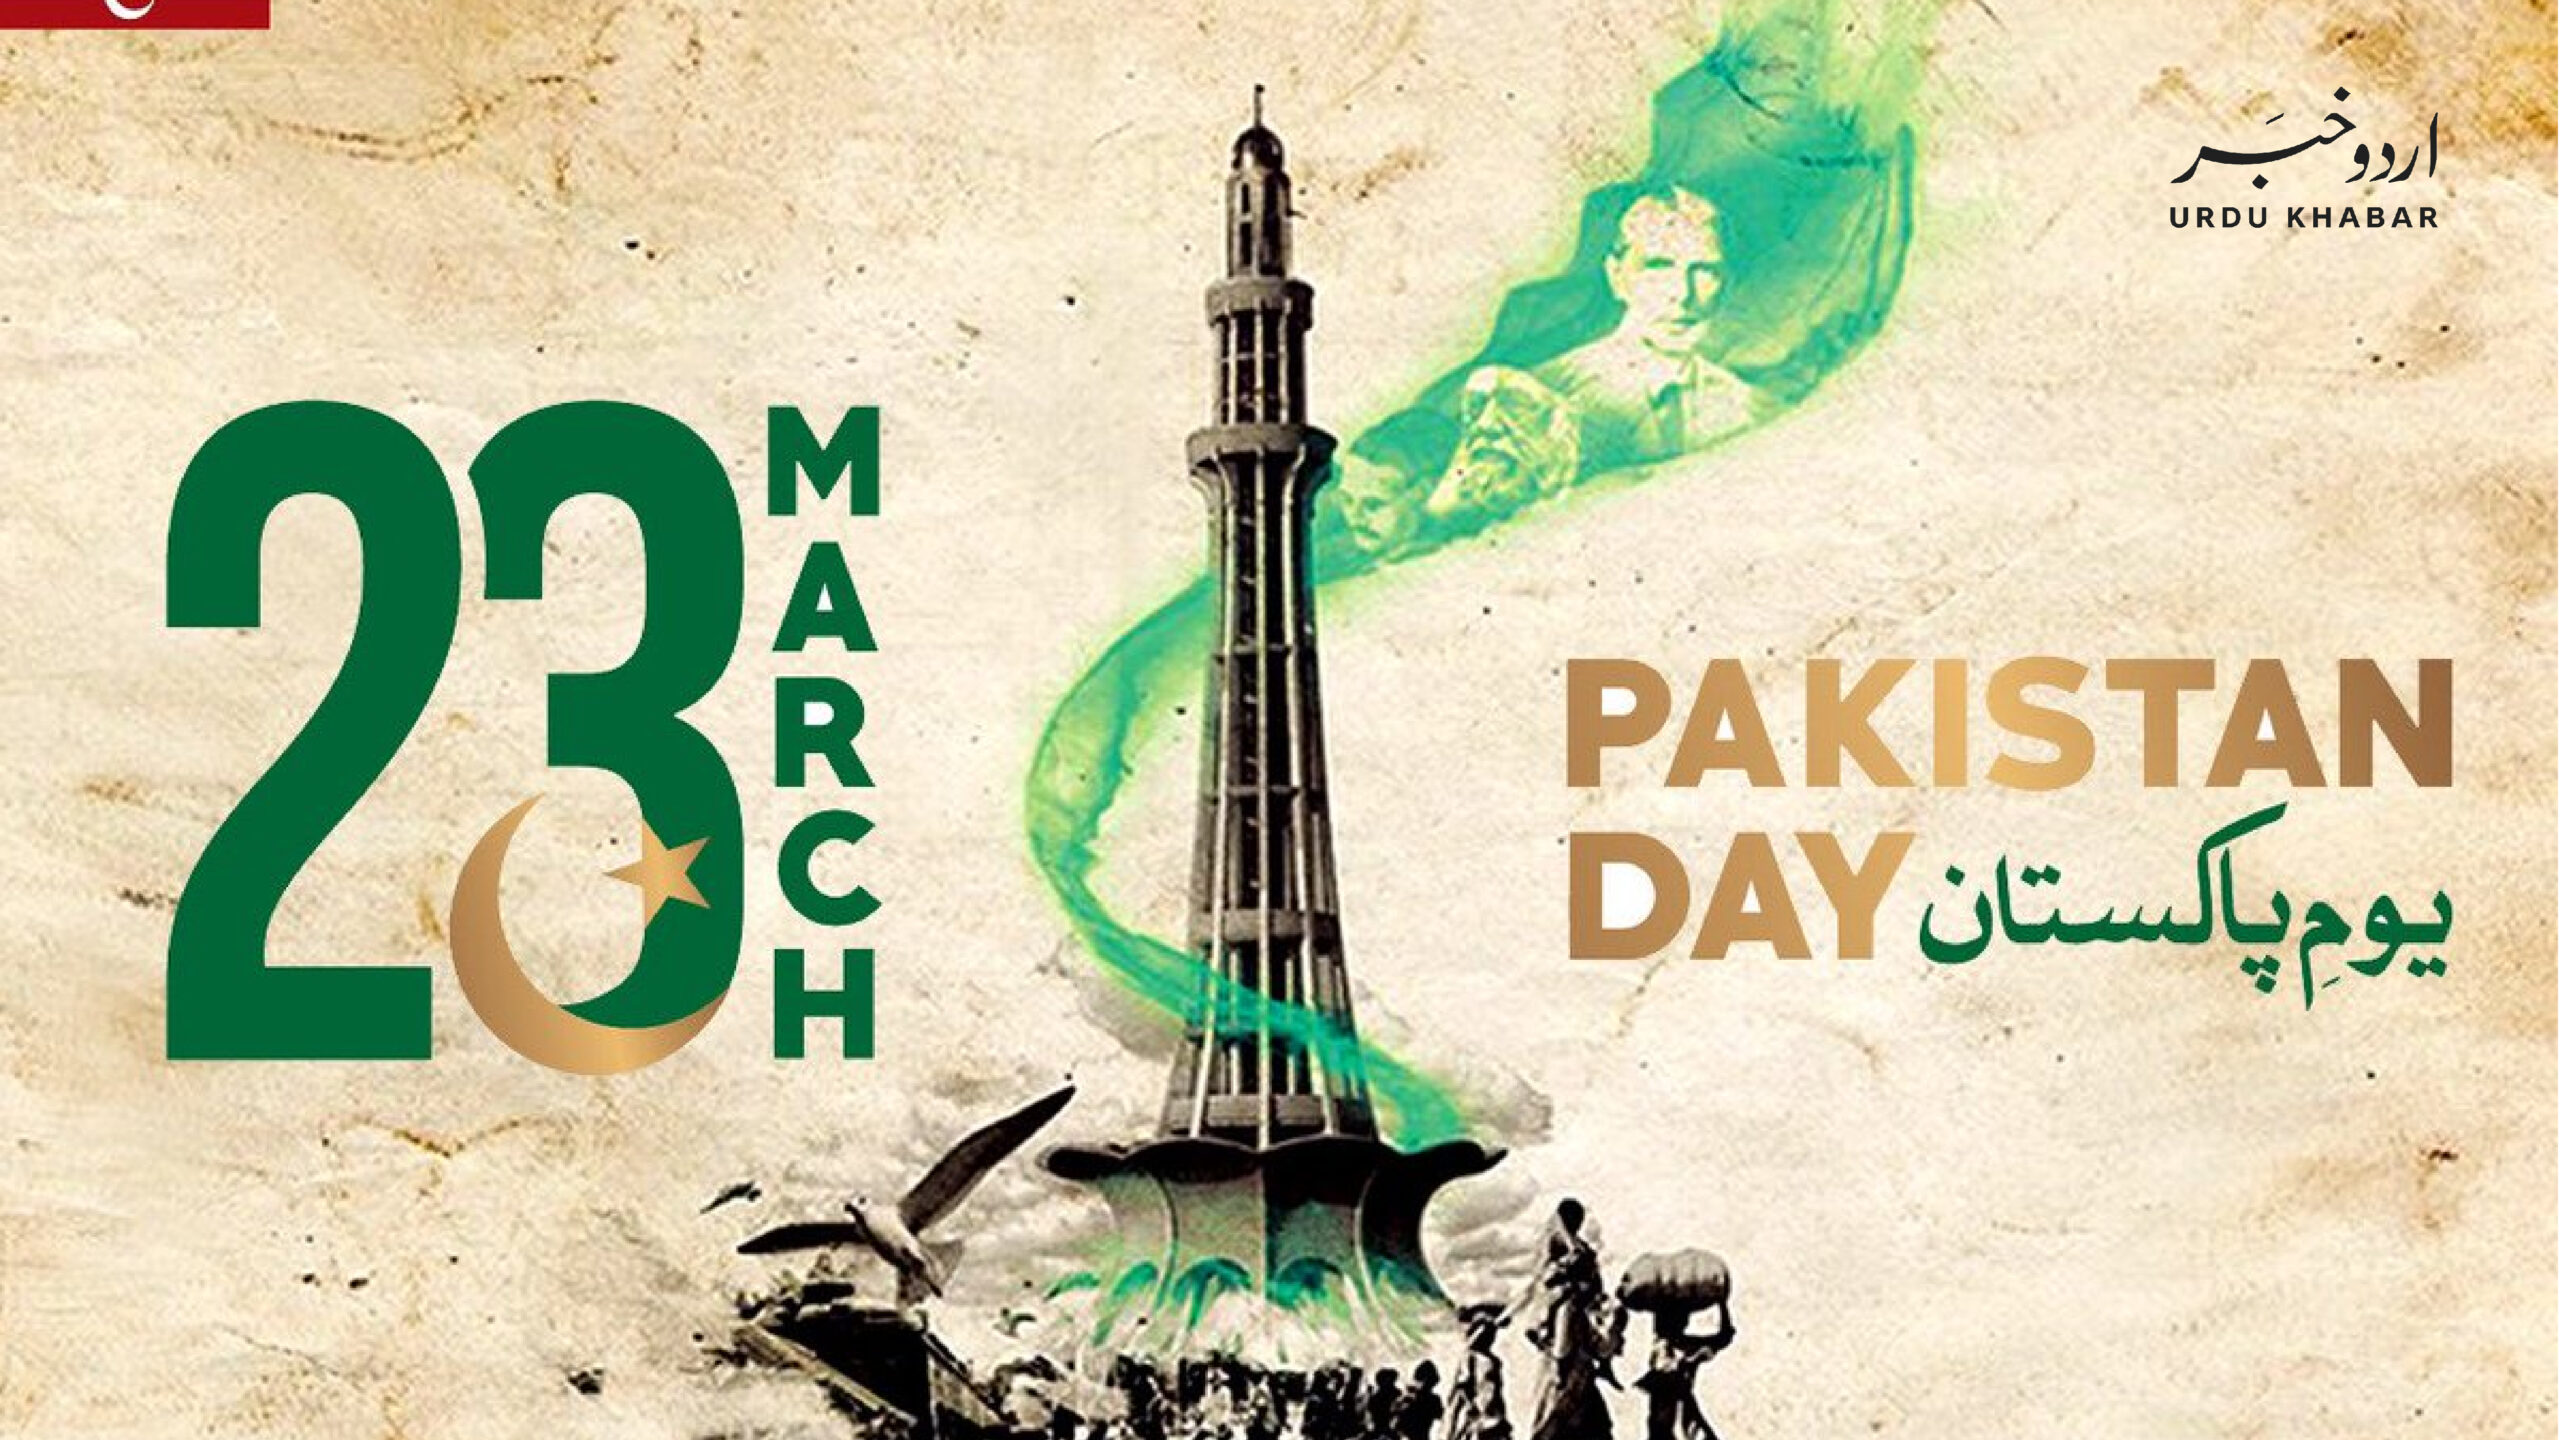 ملک بھر میں یوم قرار داد پاکستان جوش و خروش سے منایا جا رہا ہے